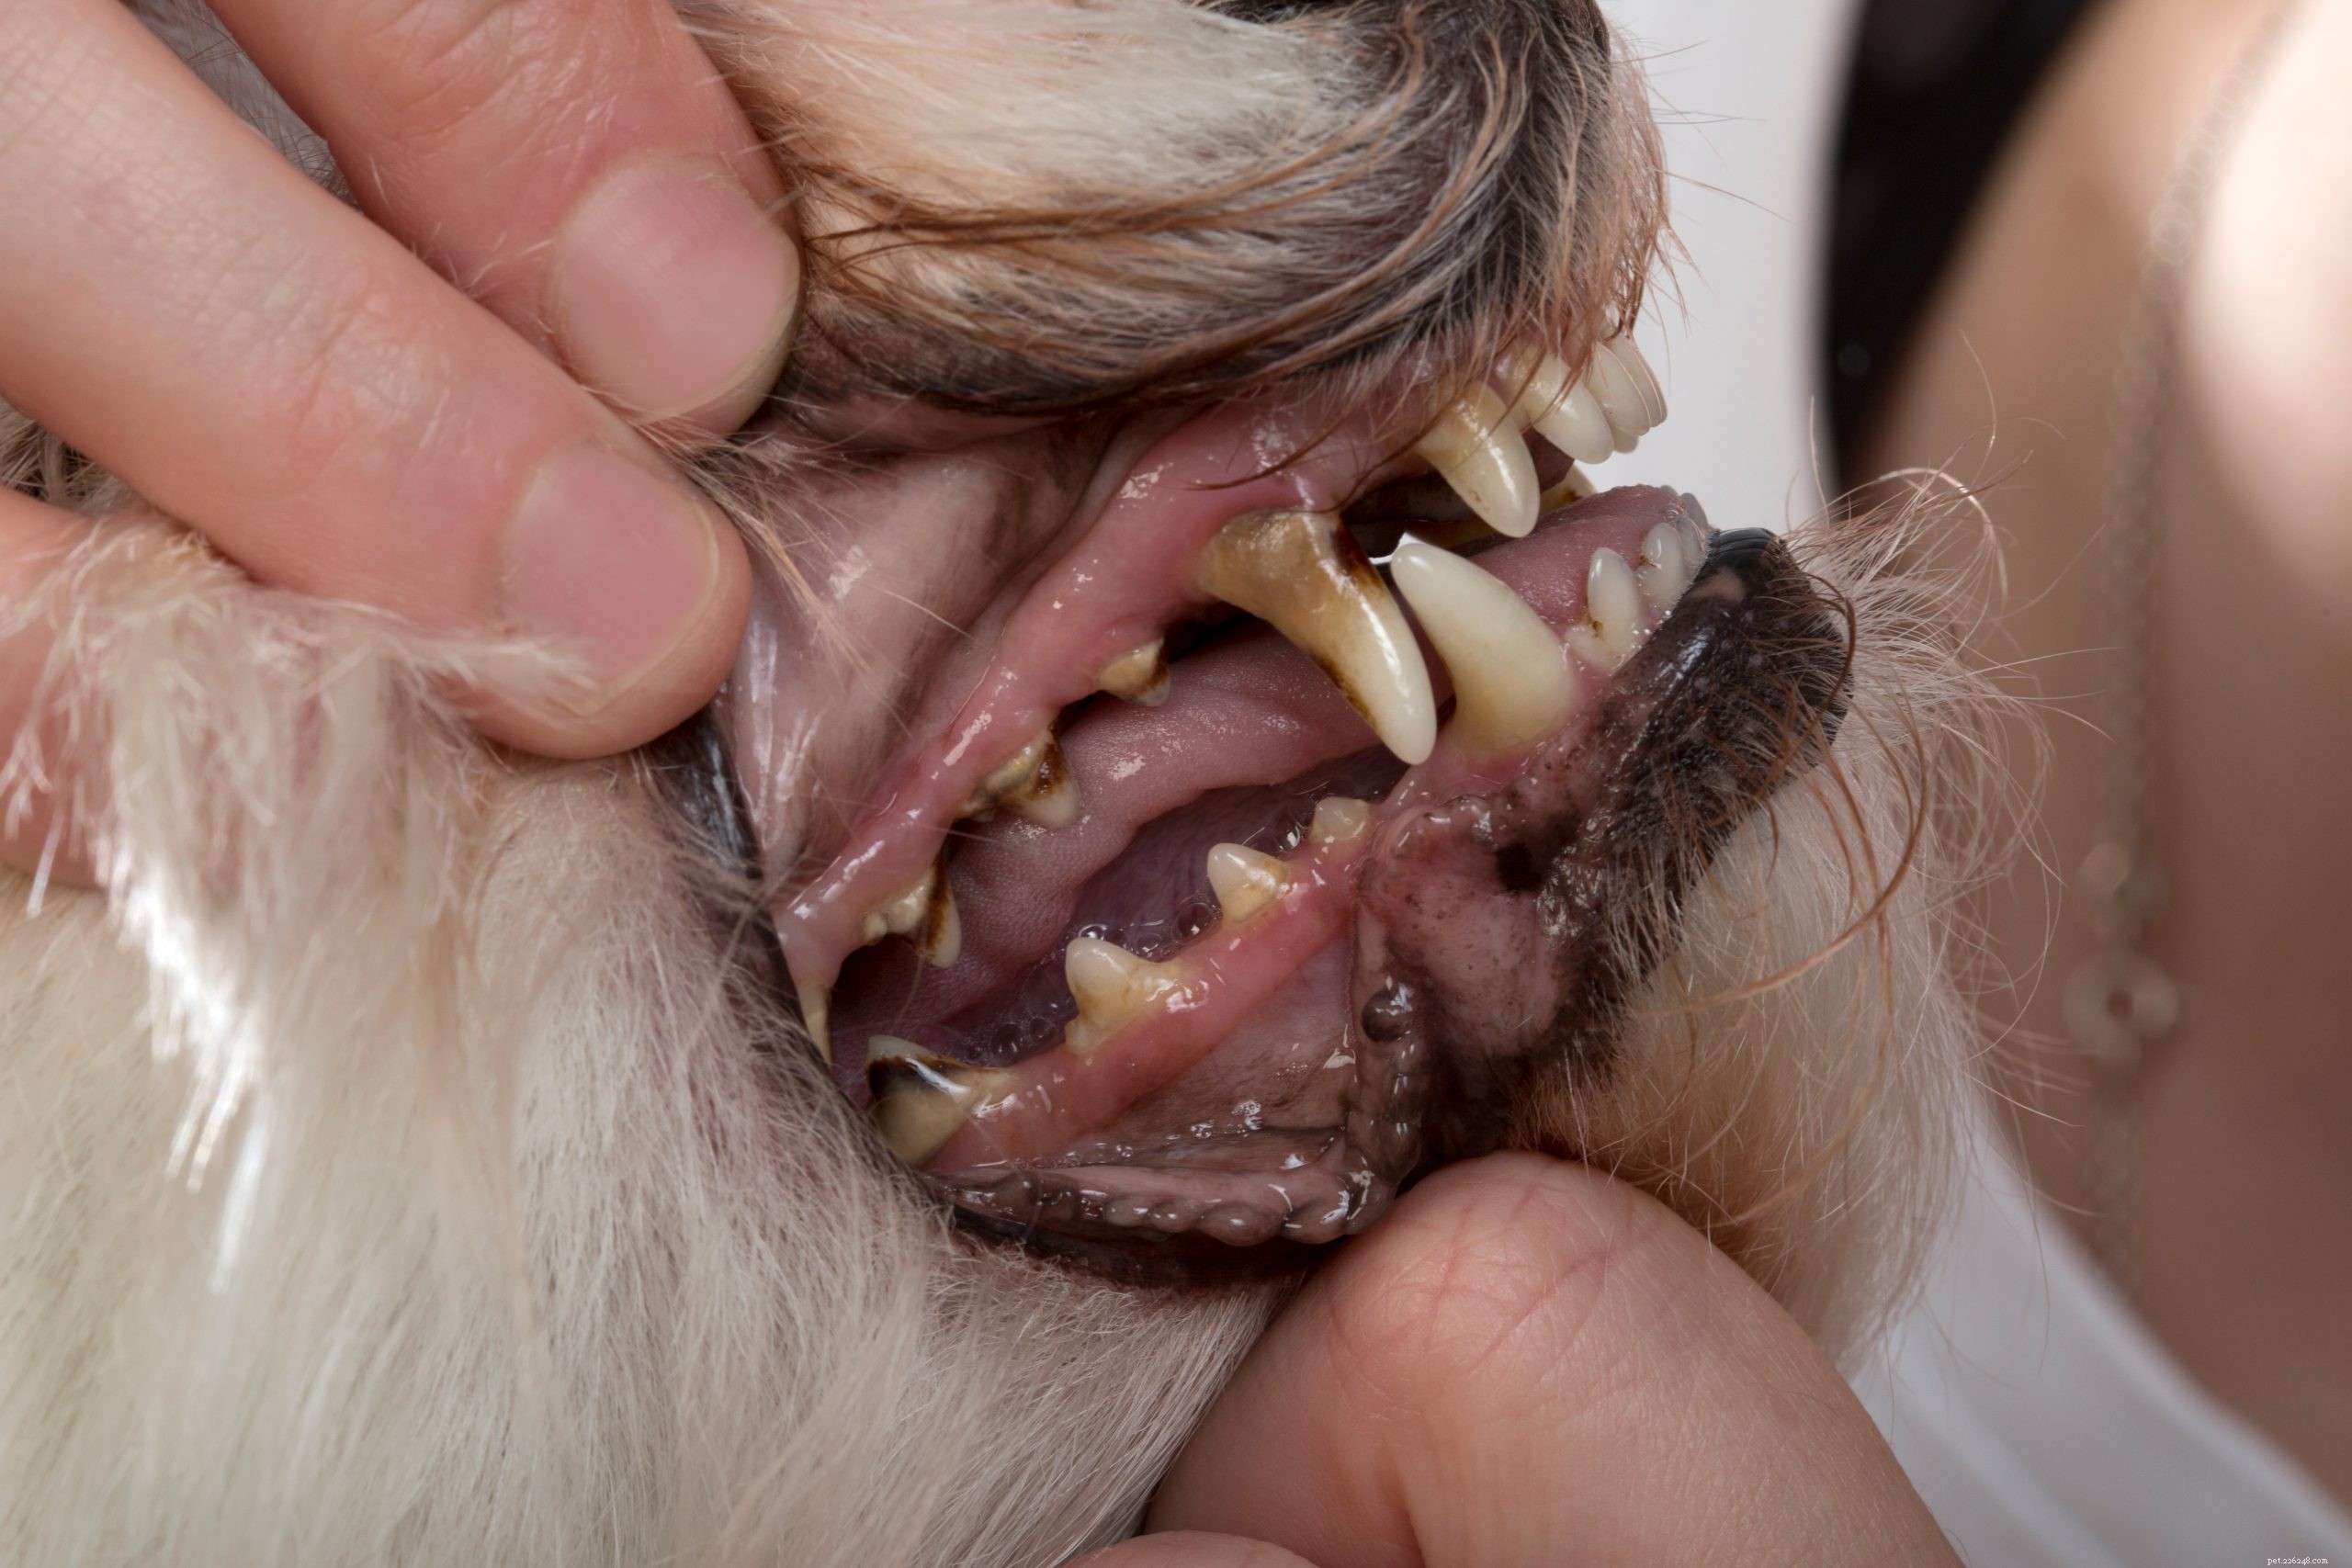 Maladies parodontales chez le chien :symptômes, stades et prévention